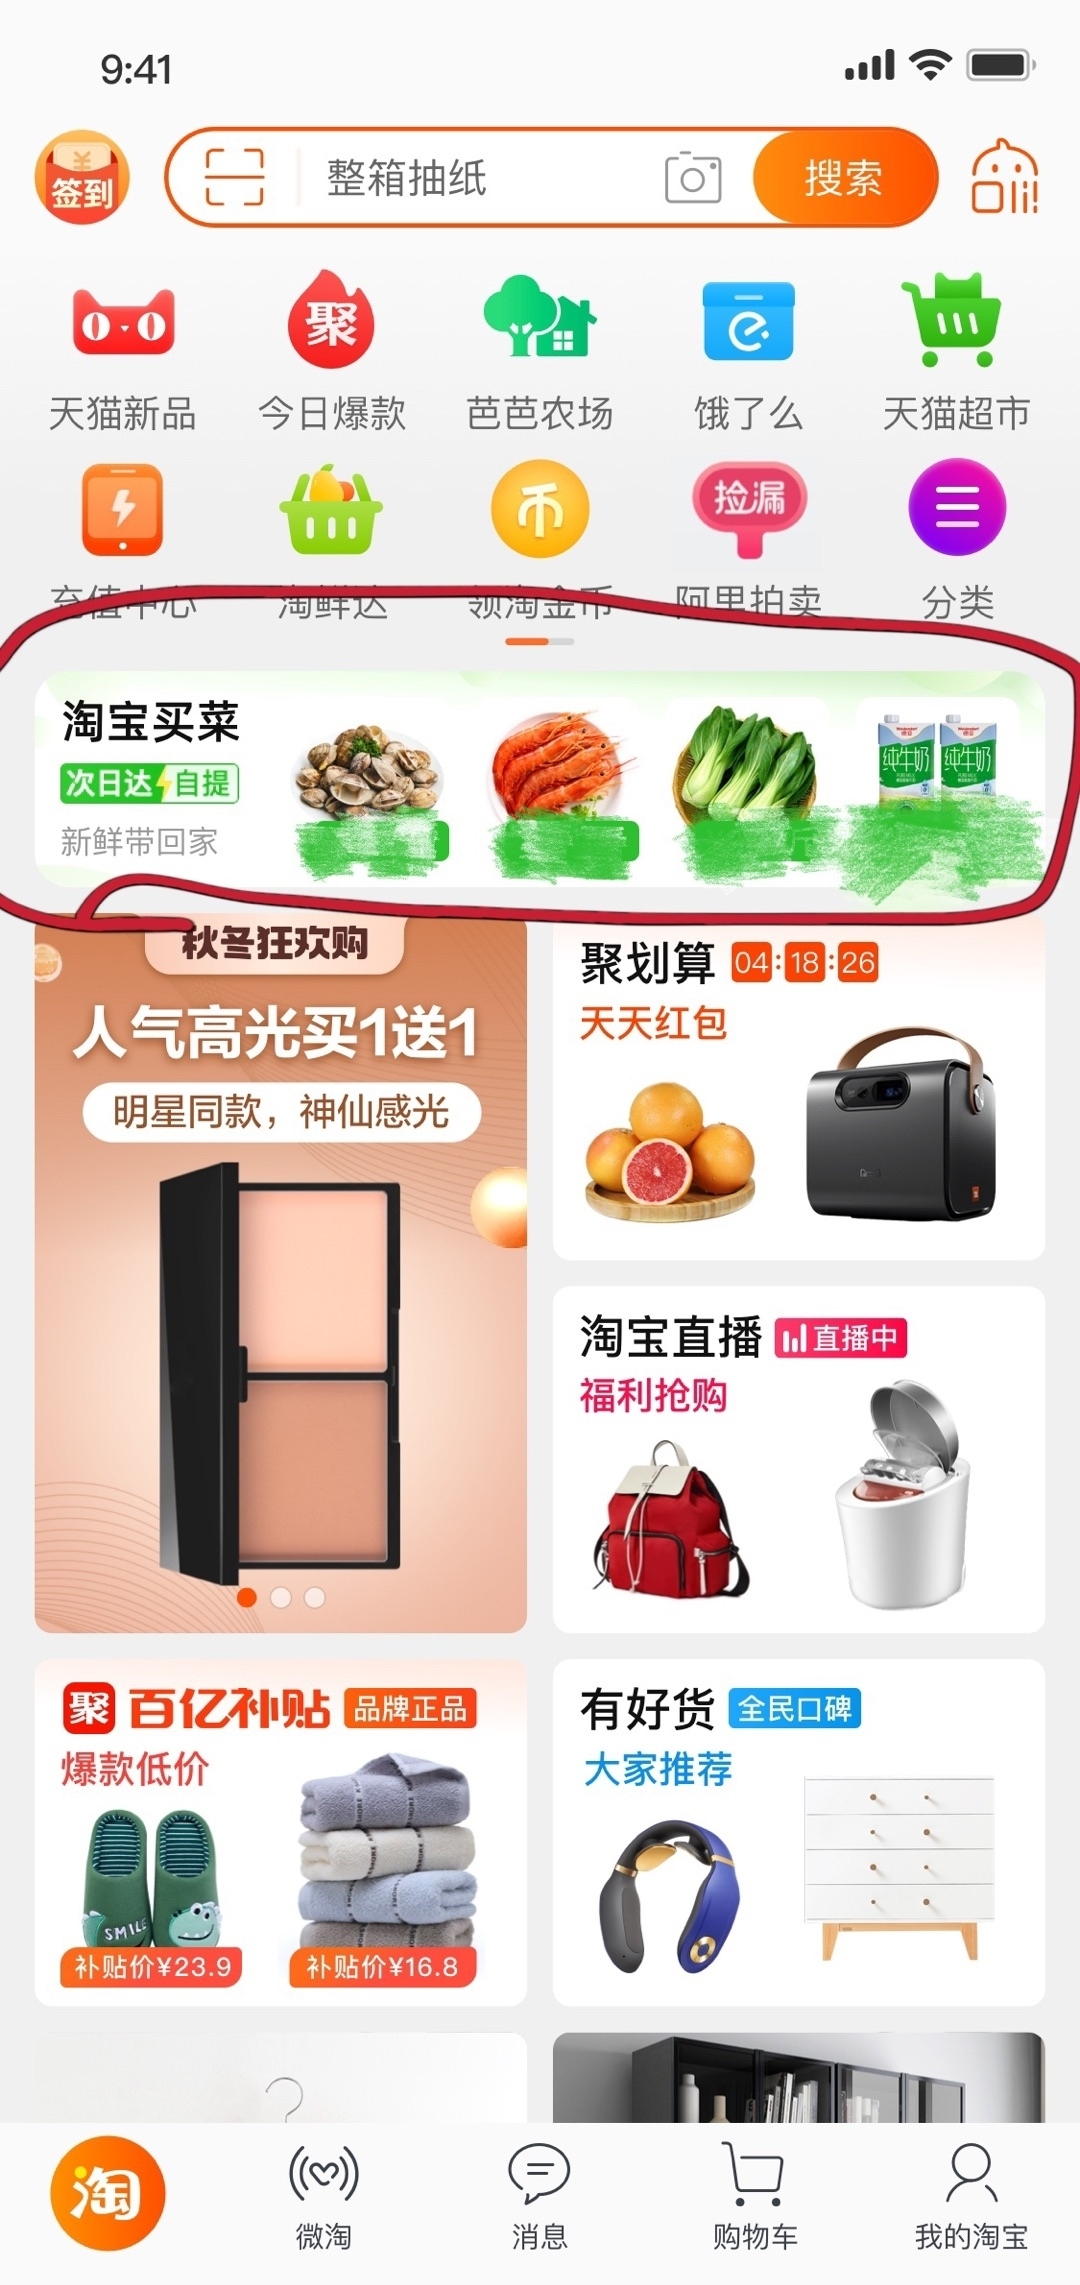 部分地区用户手淘 App 已增设 “淘宝买菜”入口